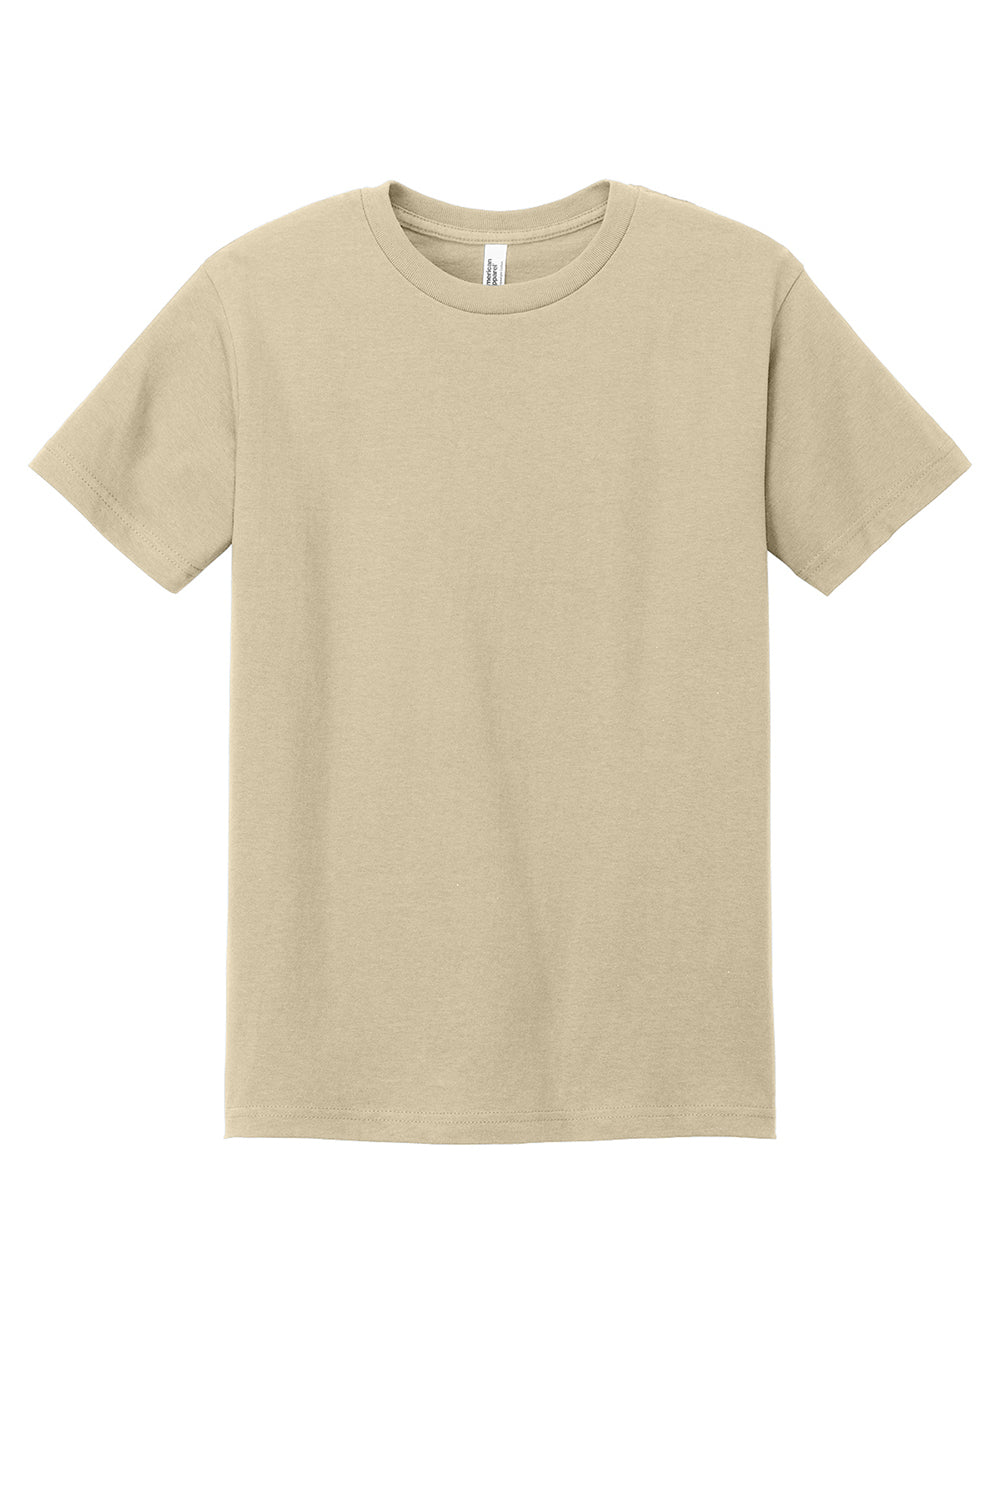 American Apparel 1301/AL1301 Mens Short Sleeve Crewneck T-Shirt Sand Flat Front